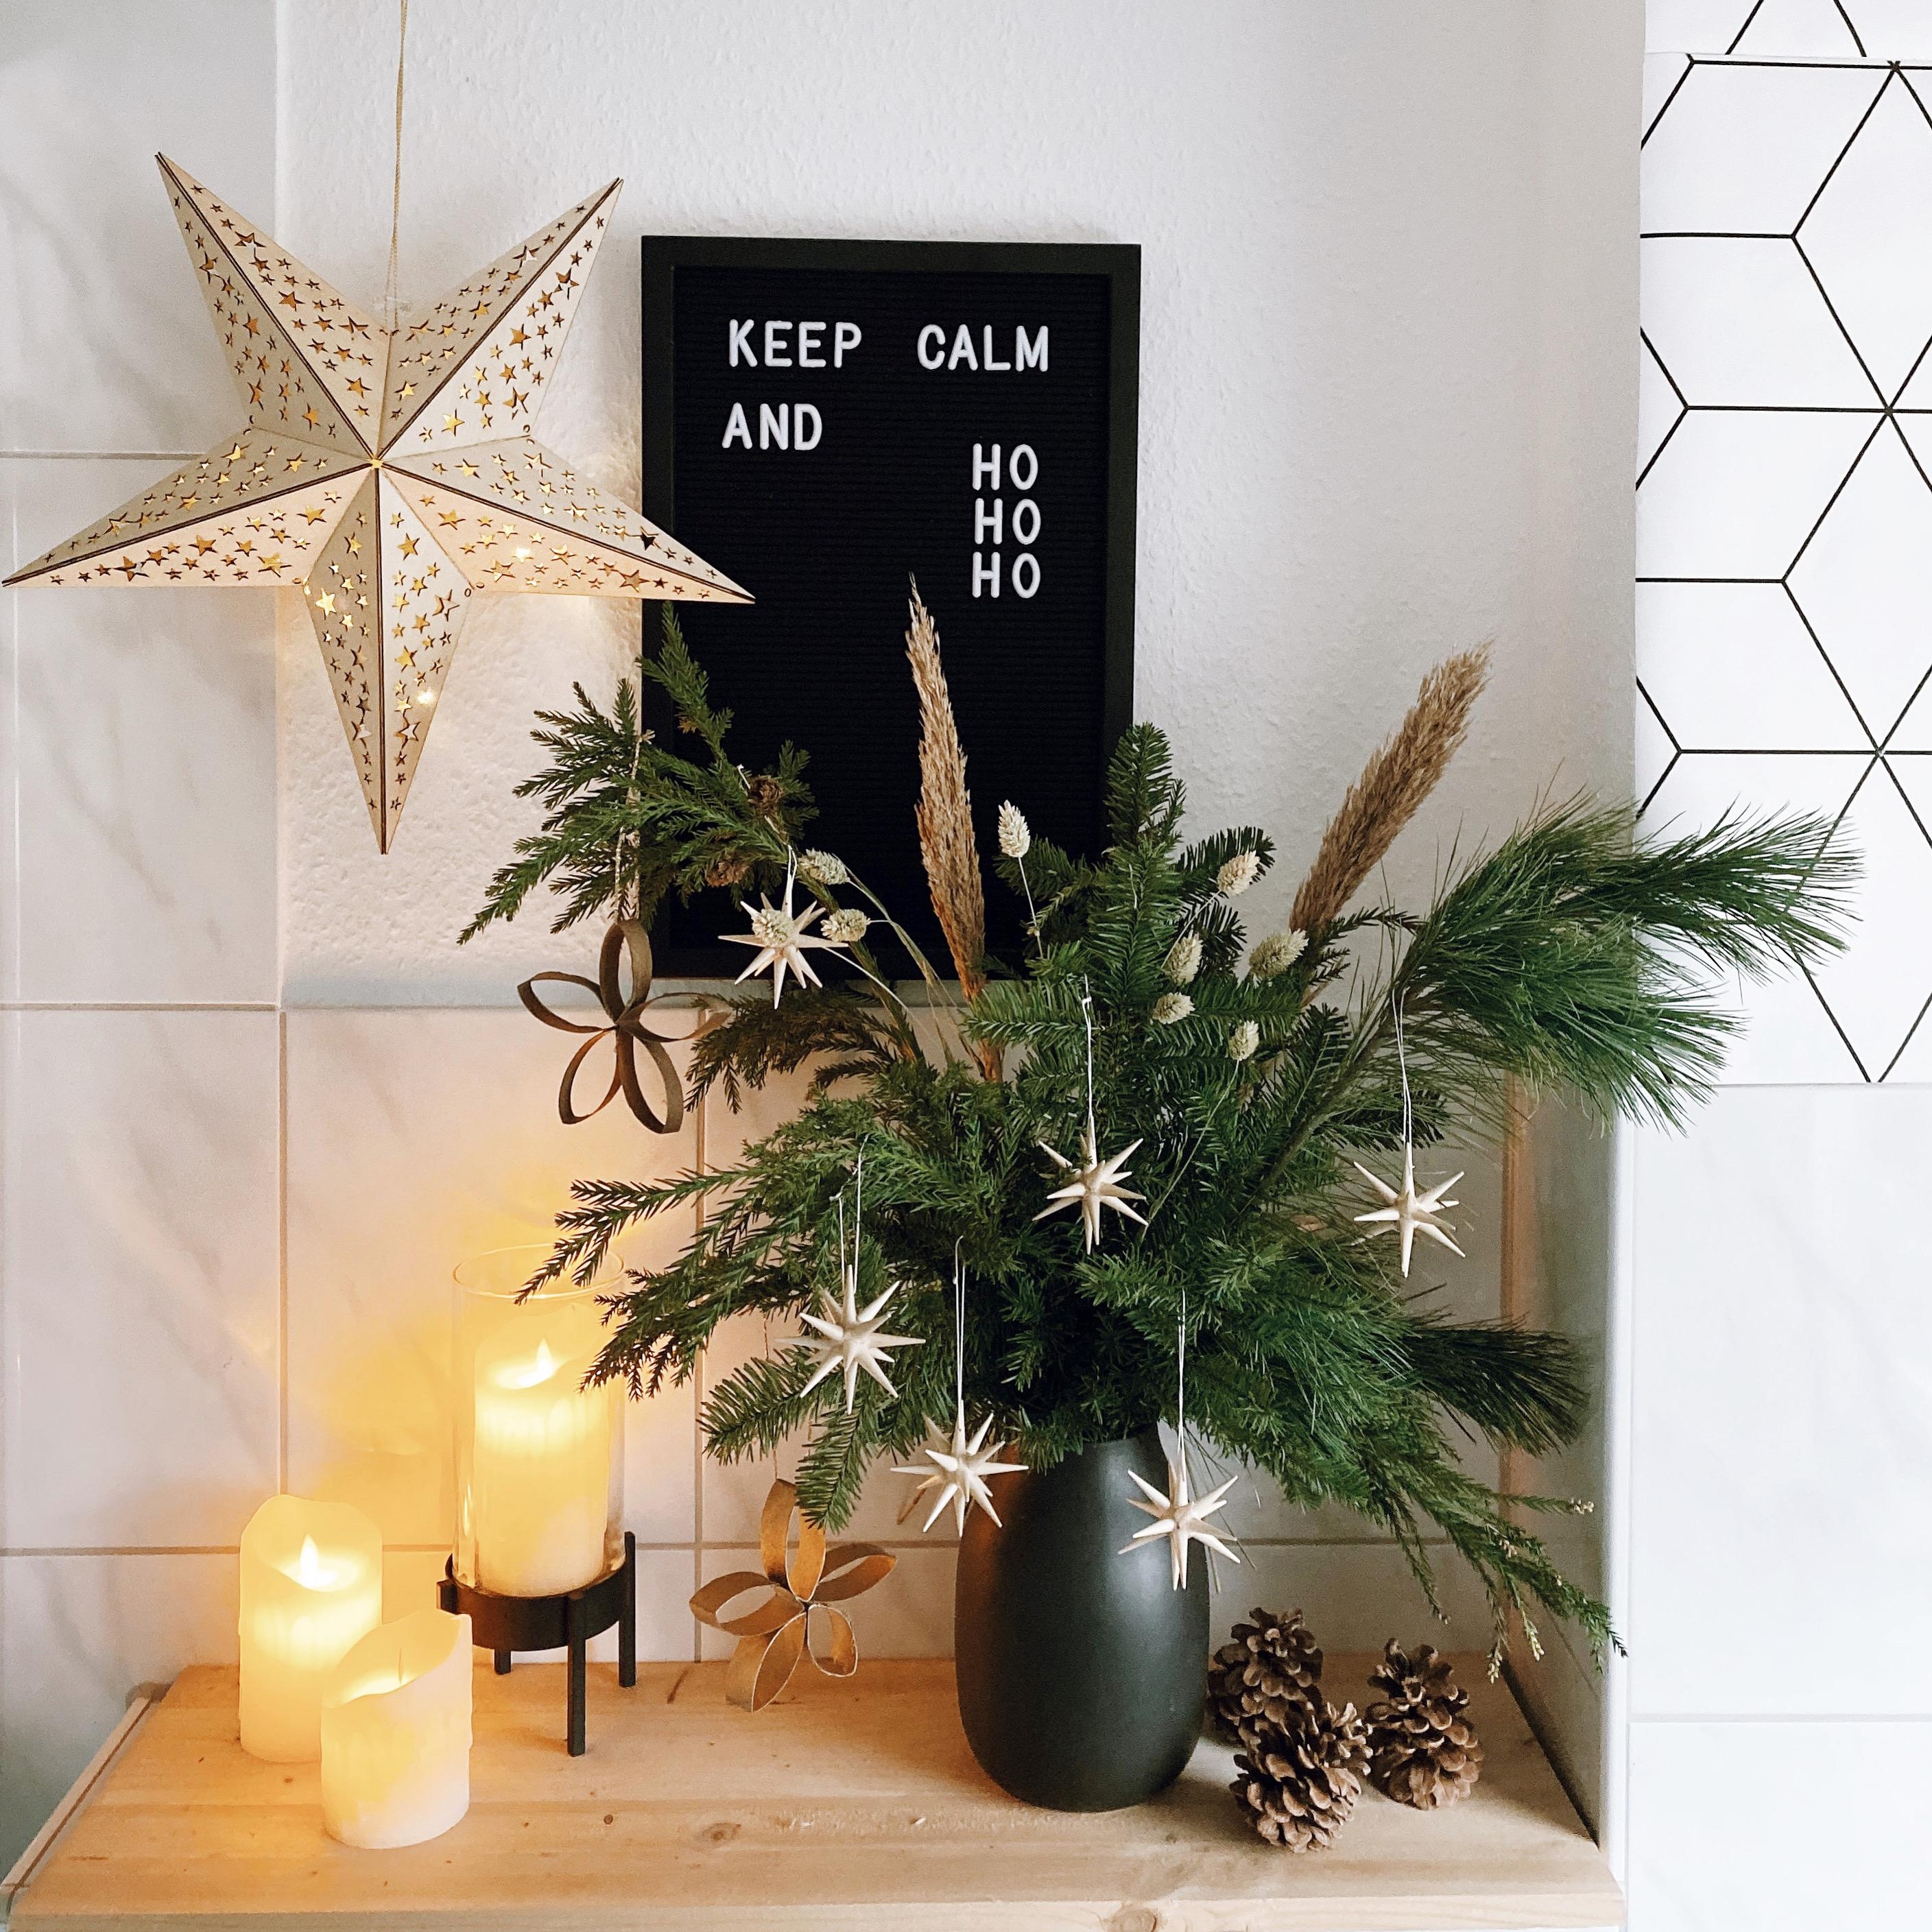 Keep calm and hohoho⭐️⭐️⭐️
#weihnachtsdeko #interior #deko #weihnachten #adventsdeko #advent #sterne #weihnachtsschmuck